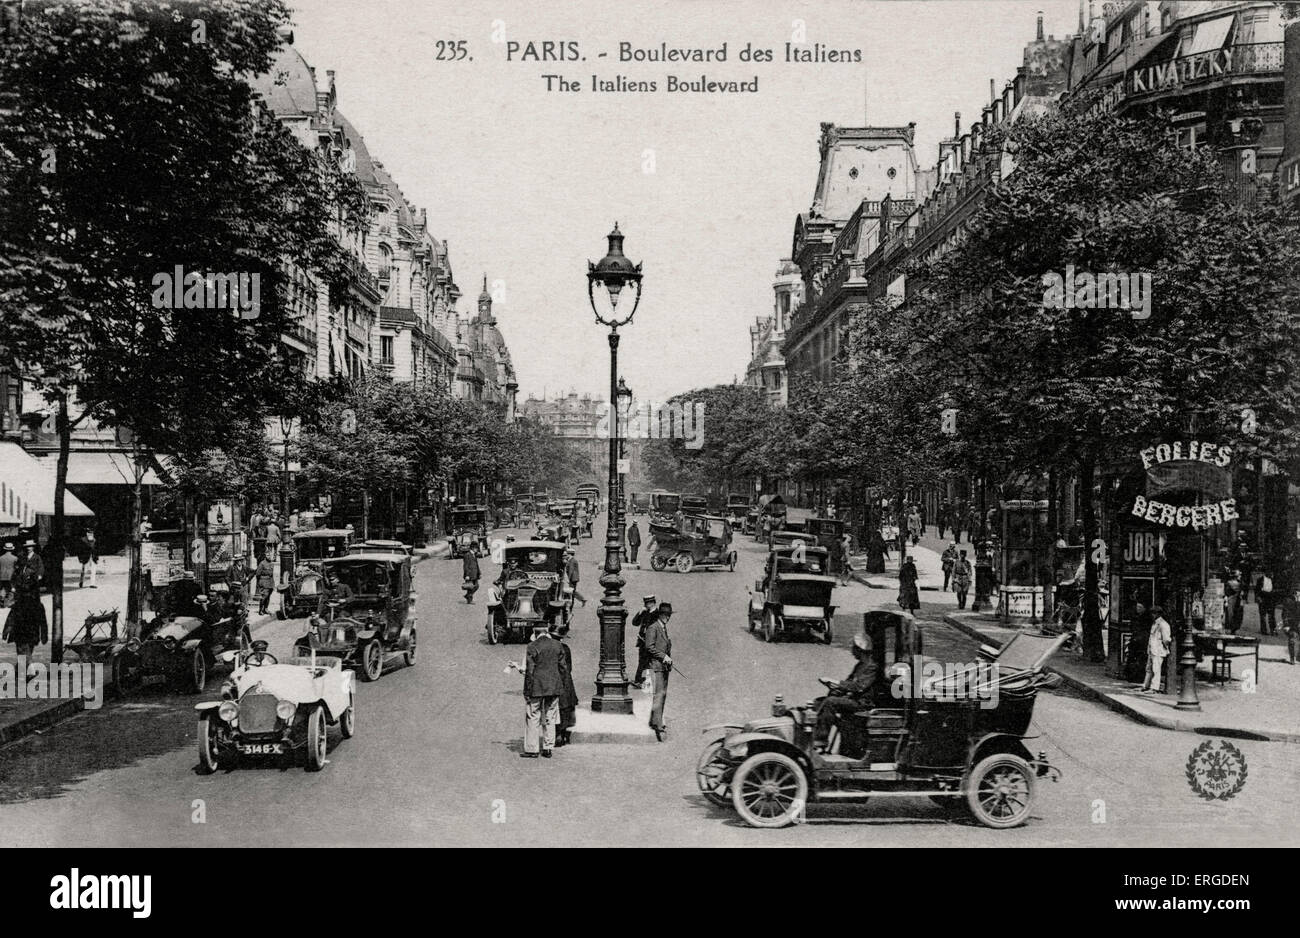 Boulevard des Italiens, Paris - début du xxe siècle Banque D'Images